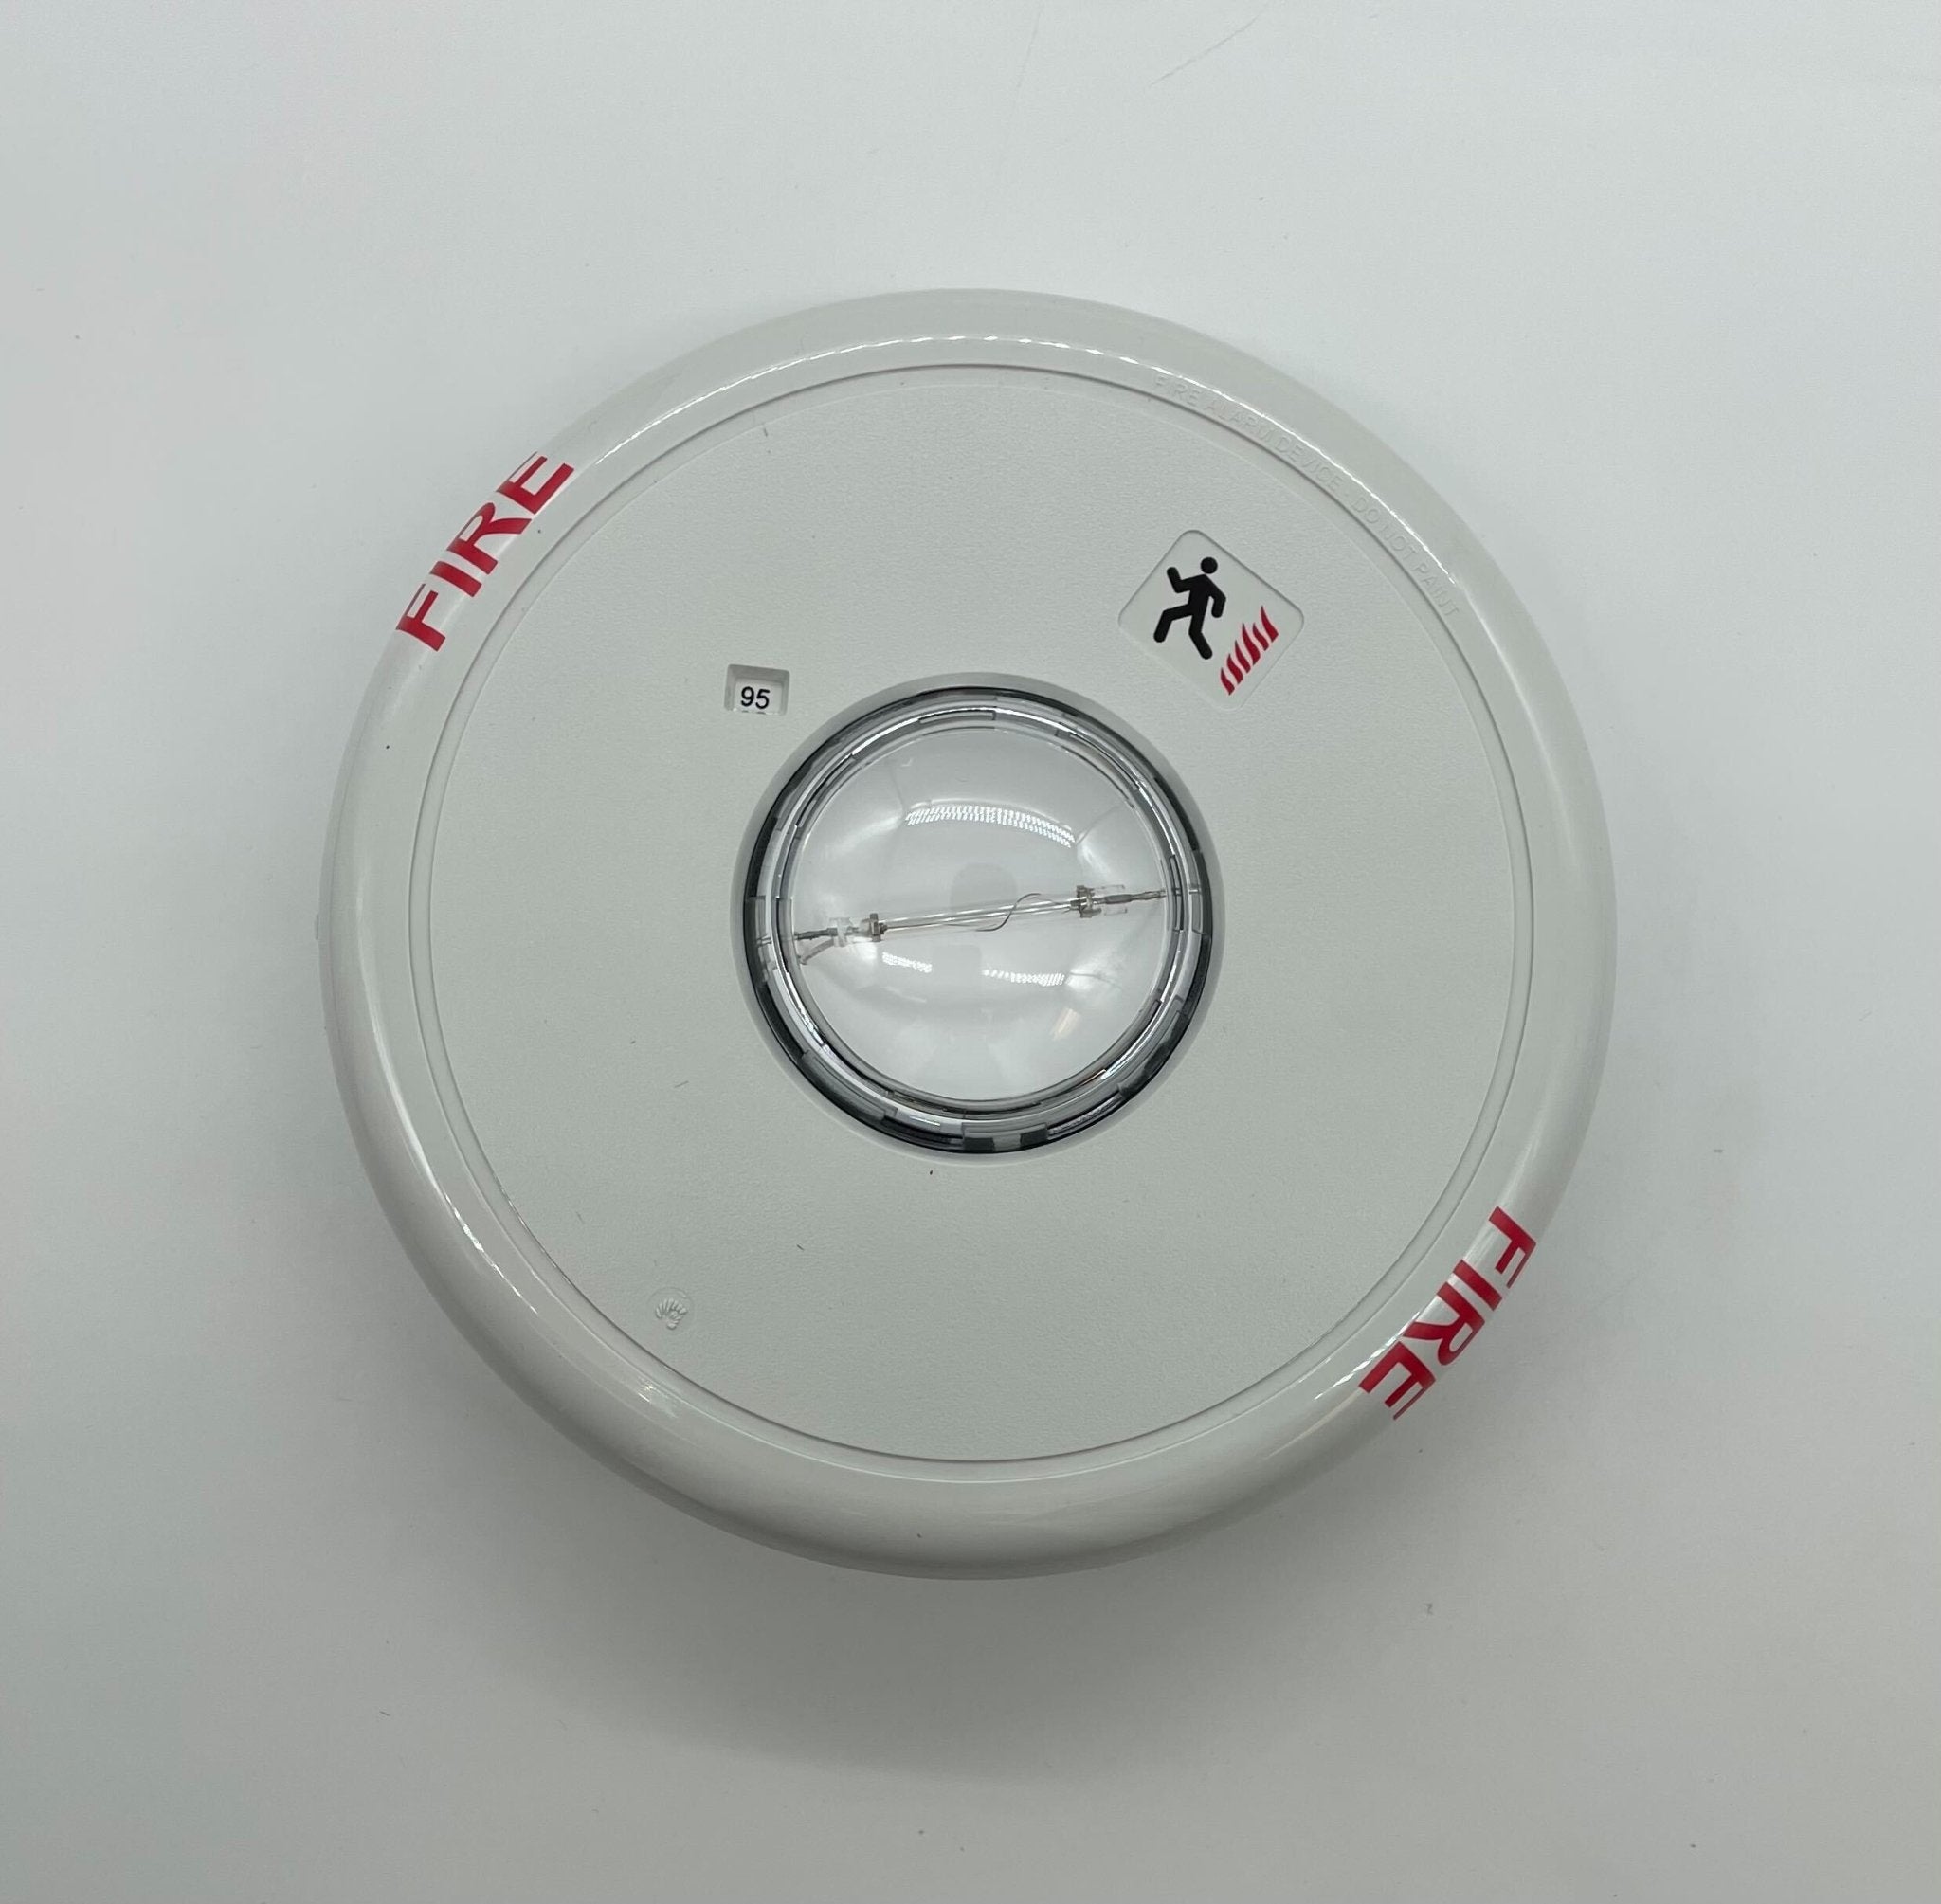 Edwards GCF-VMH - The Fire Alarm Supplier